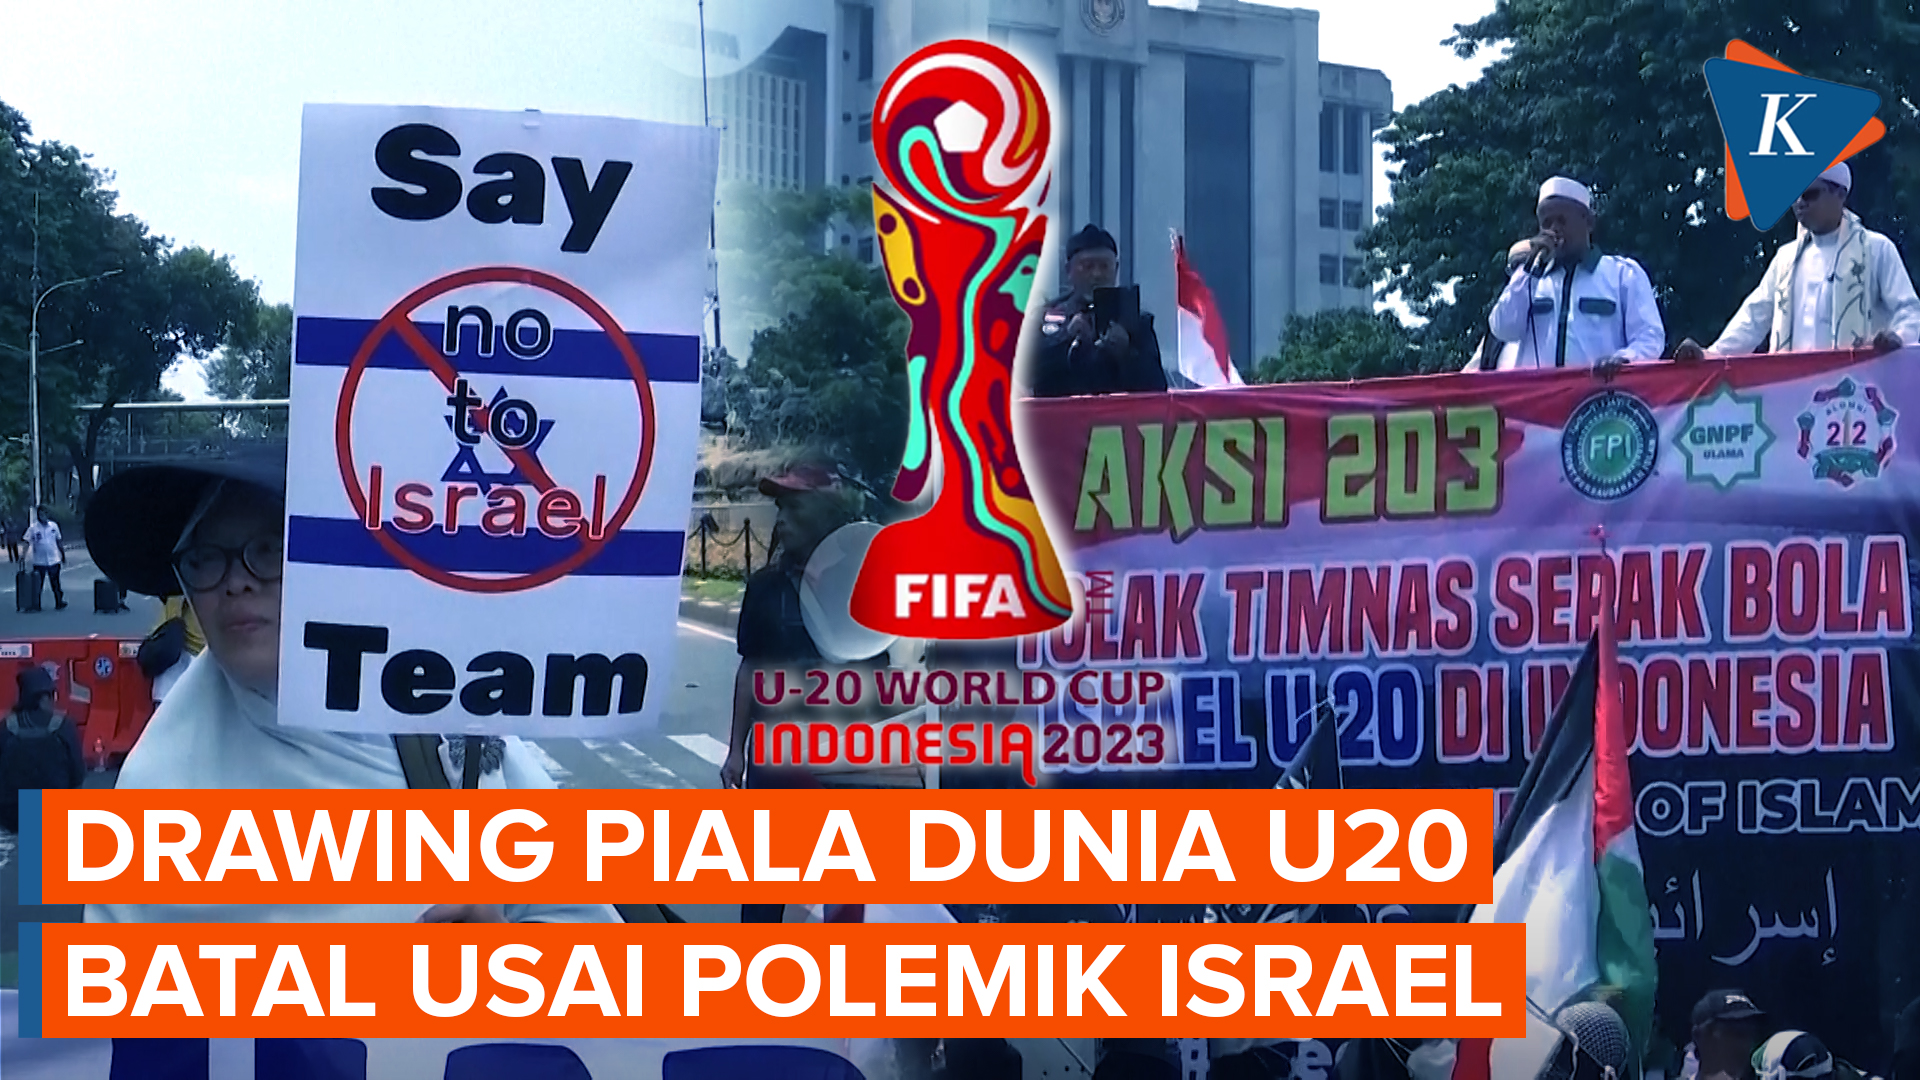 Polemik Timnas Israel di Piala Dunia U20 Indonesia